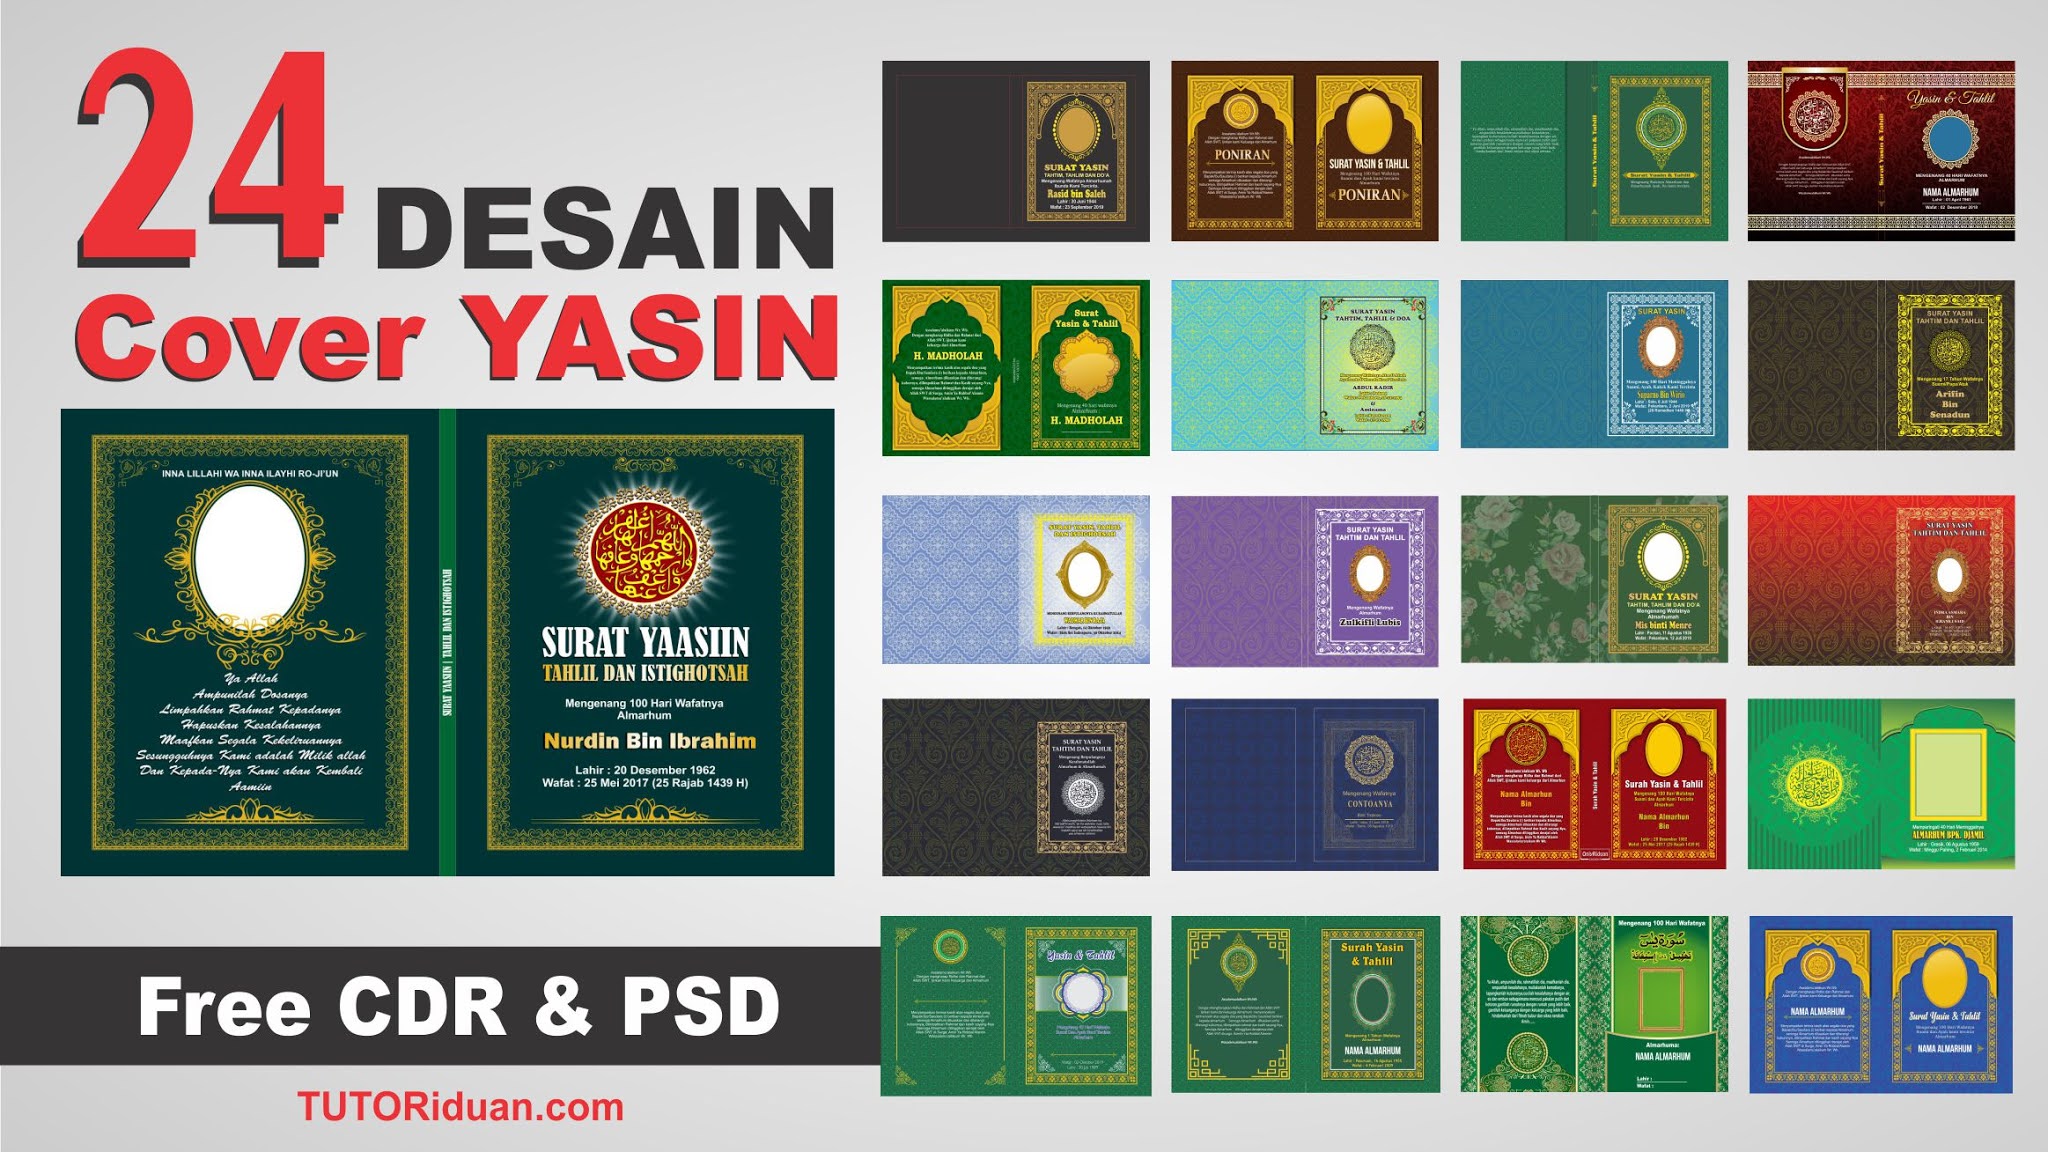 24 Free Download Desain Cover Yasin Siap Cetak Free Cdr Psd Tutoriduan Com